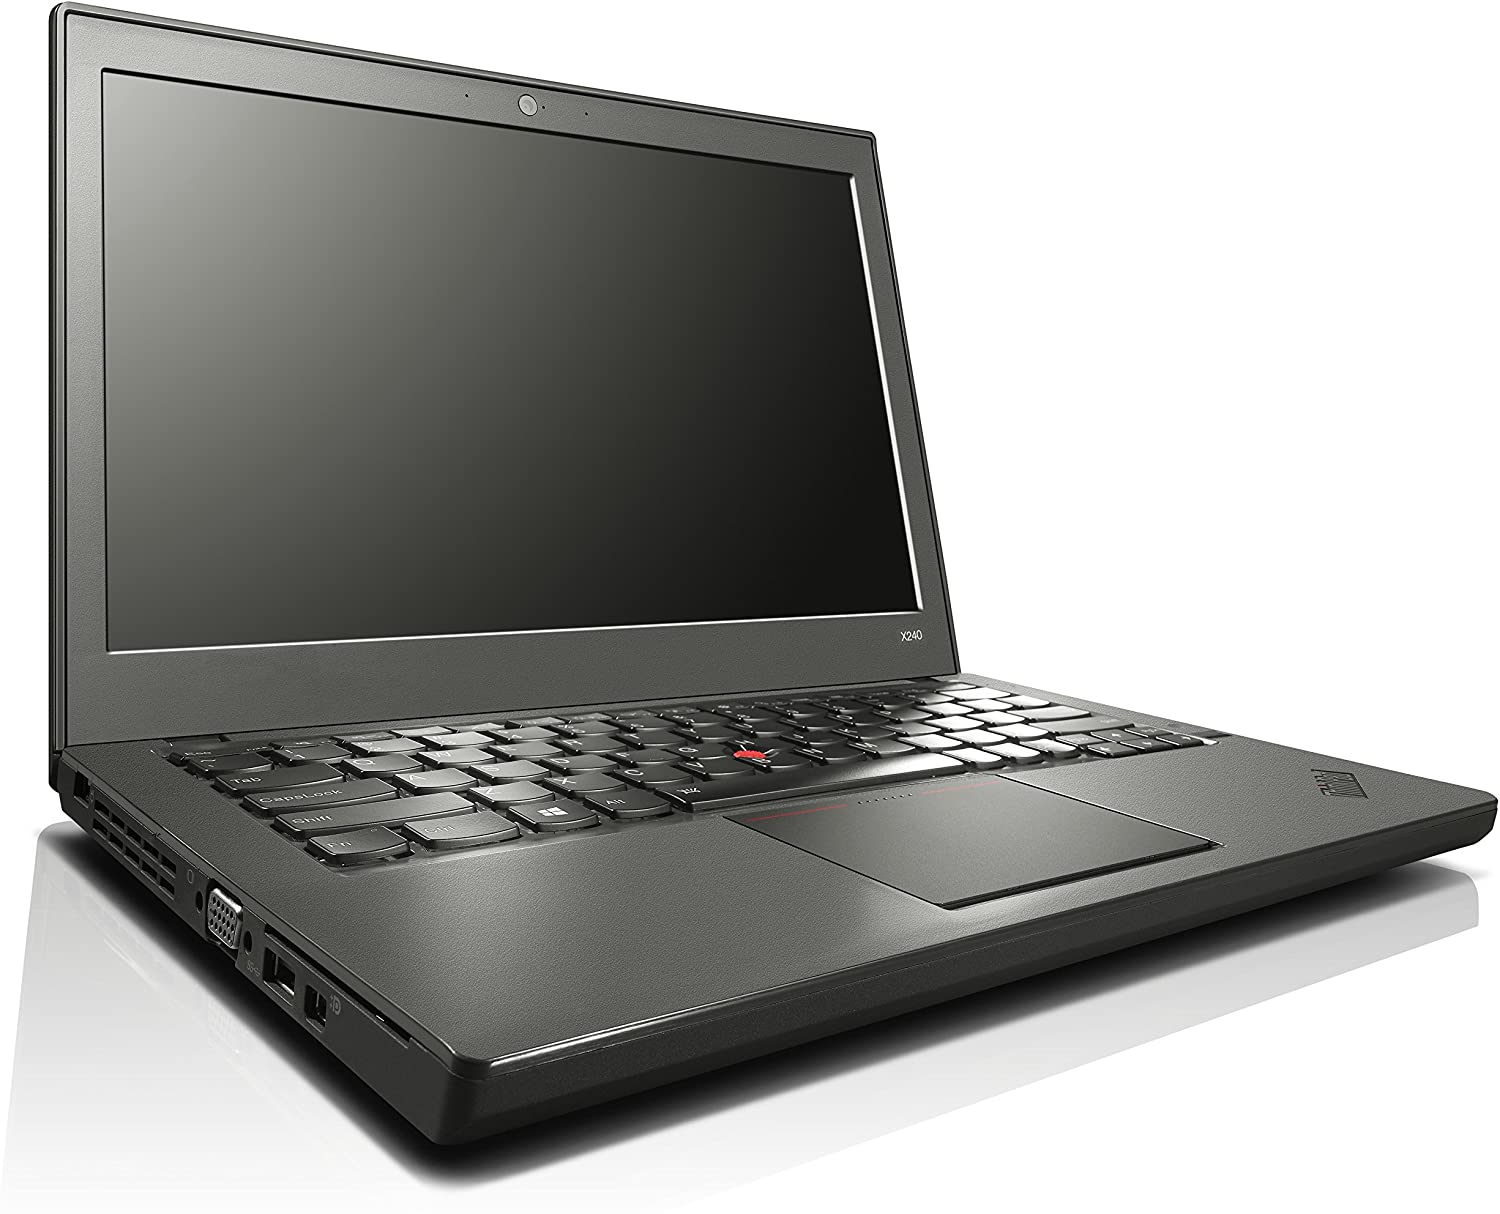 ThinkPad x240, i5, 8GB memory, 256GB SSD